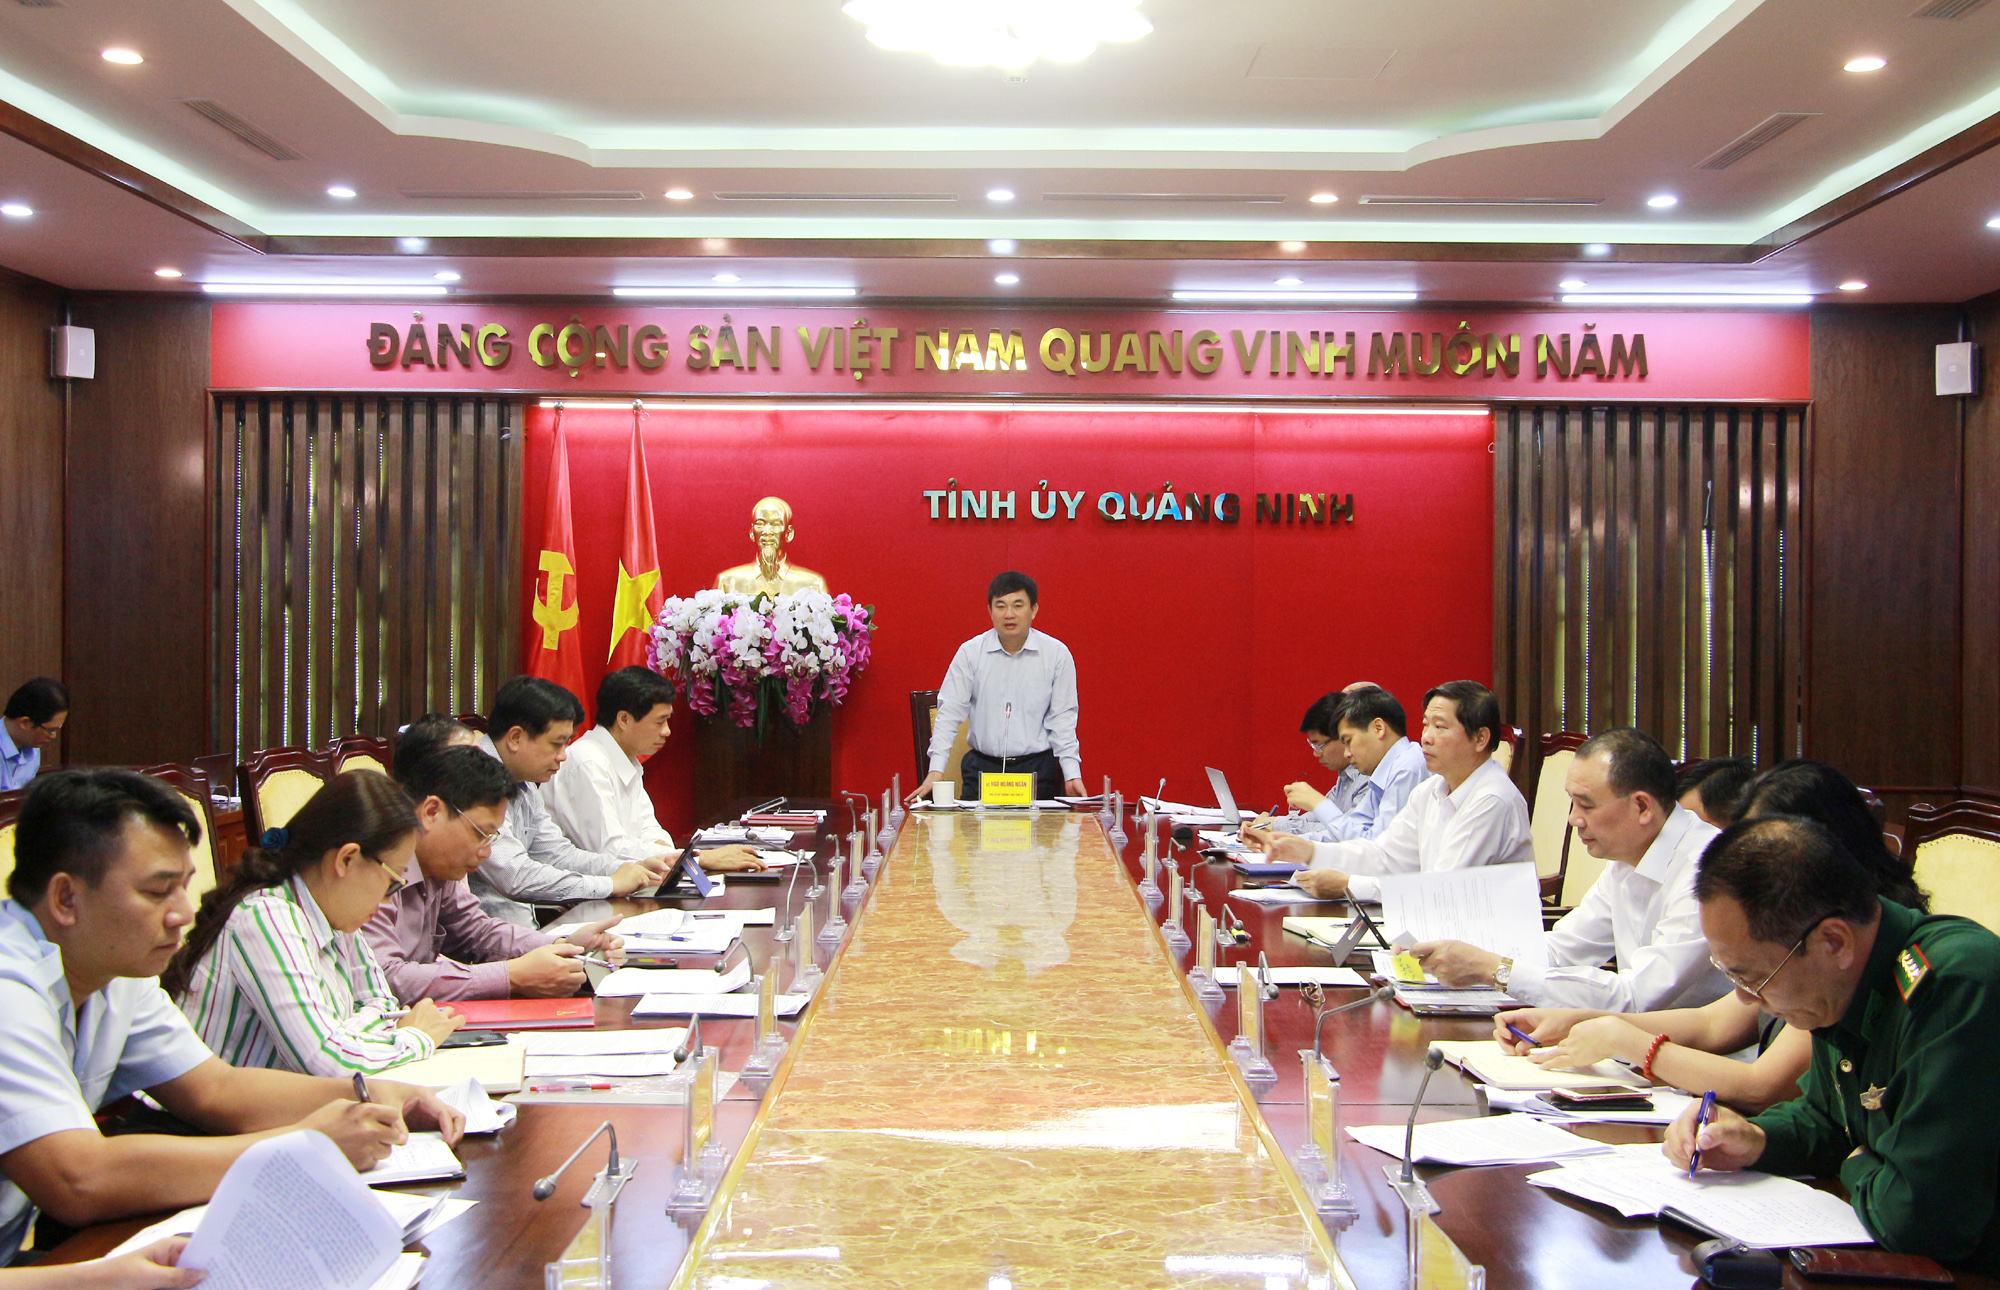 Đồng chí Ngô Hoàng Ngân, Phó Bí thư Thường trực Tỉnh ủy, chủ trì giao ban công tác nội chính tháng 11/2019.